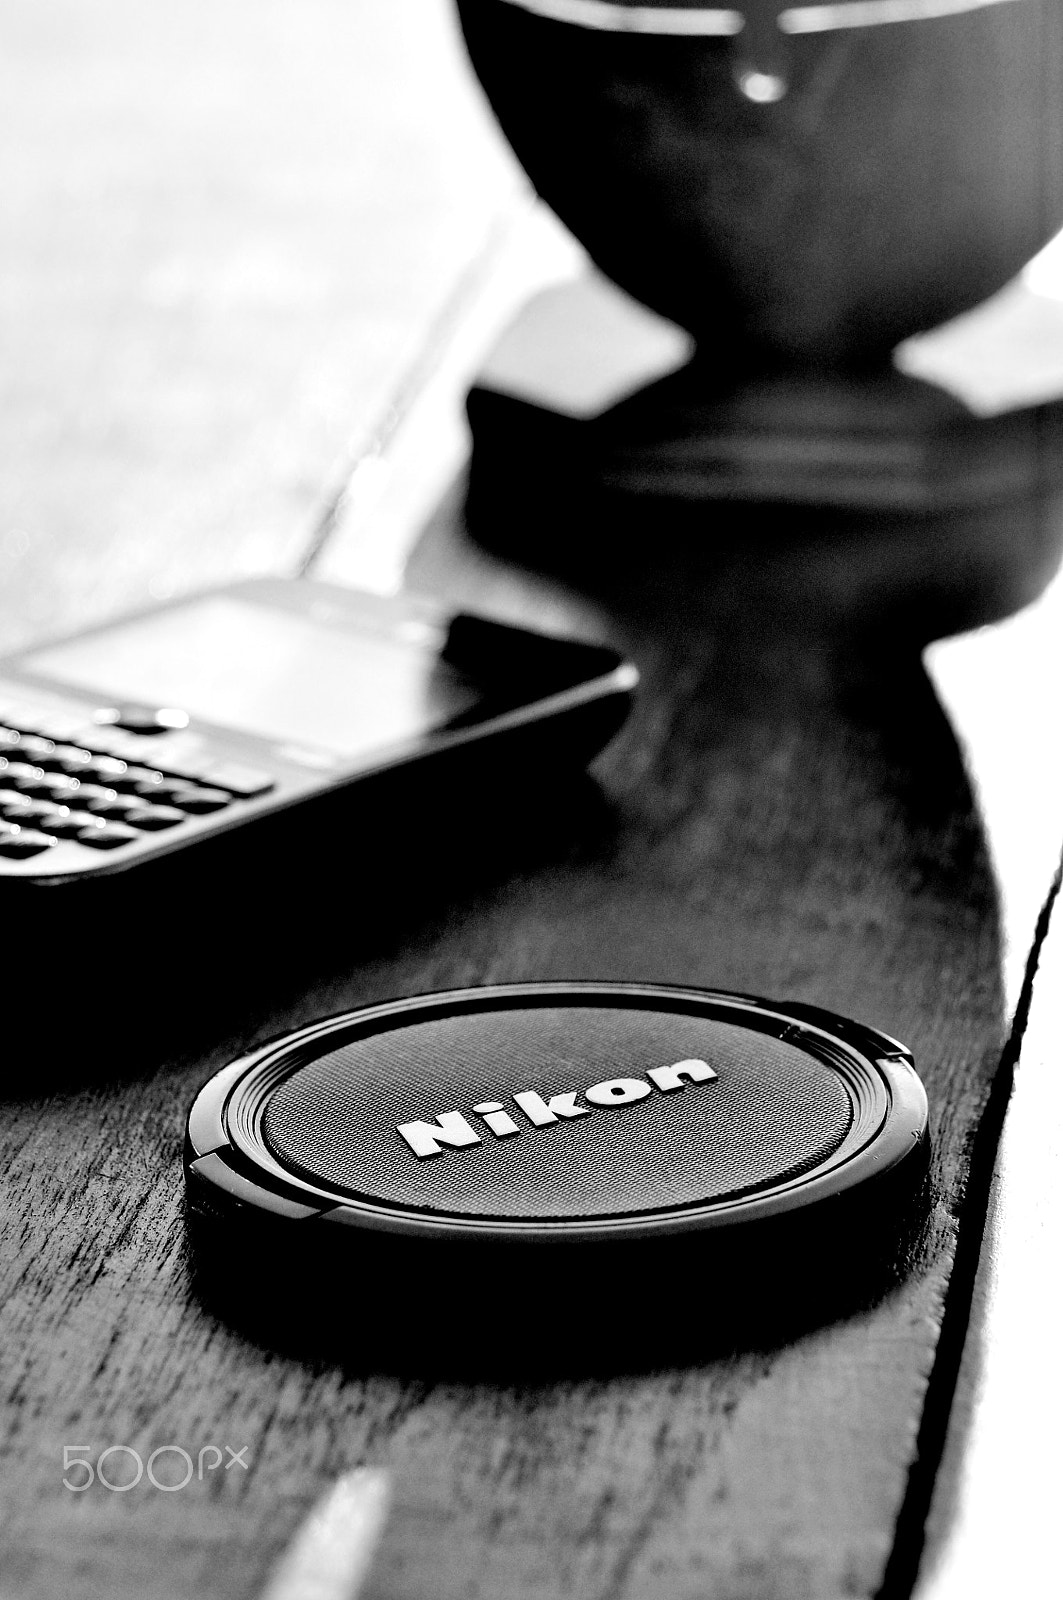 Nikon D90 + AF Zoom-Nikkor 24-120mm f/3.5-5.6D IF sample photo. Nikon photography